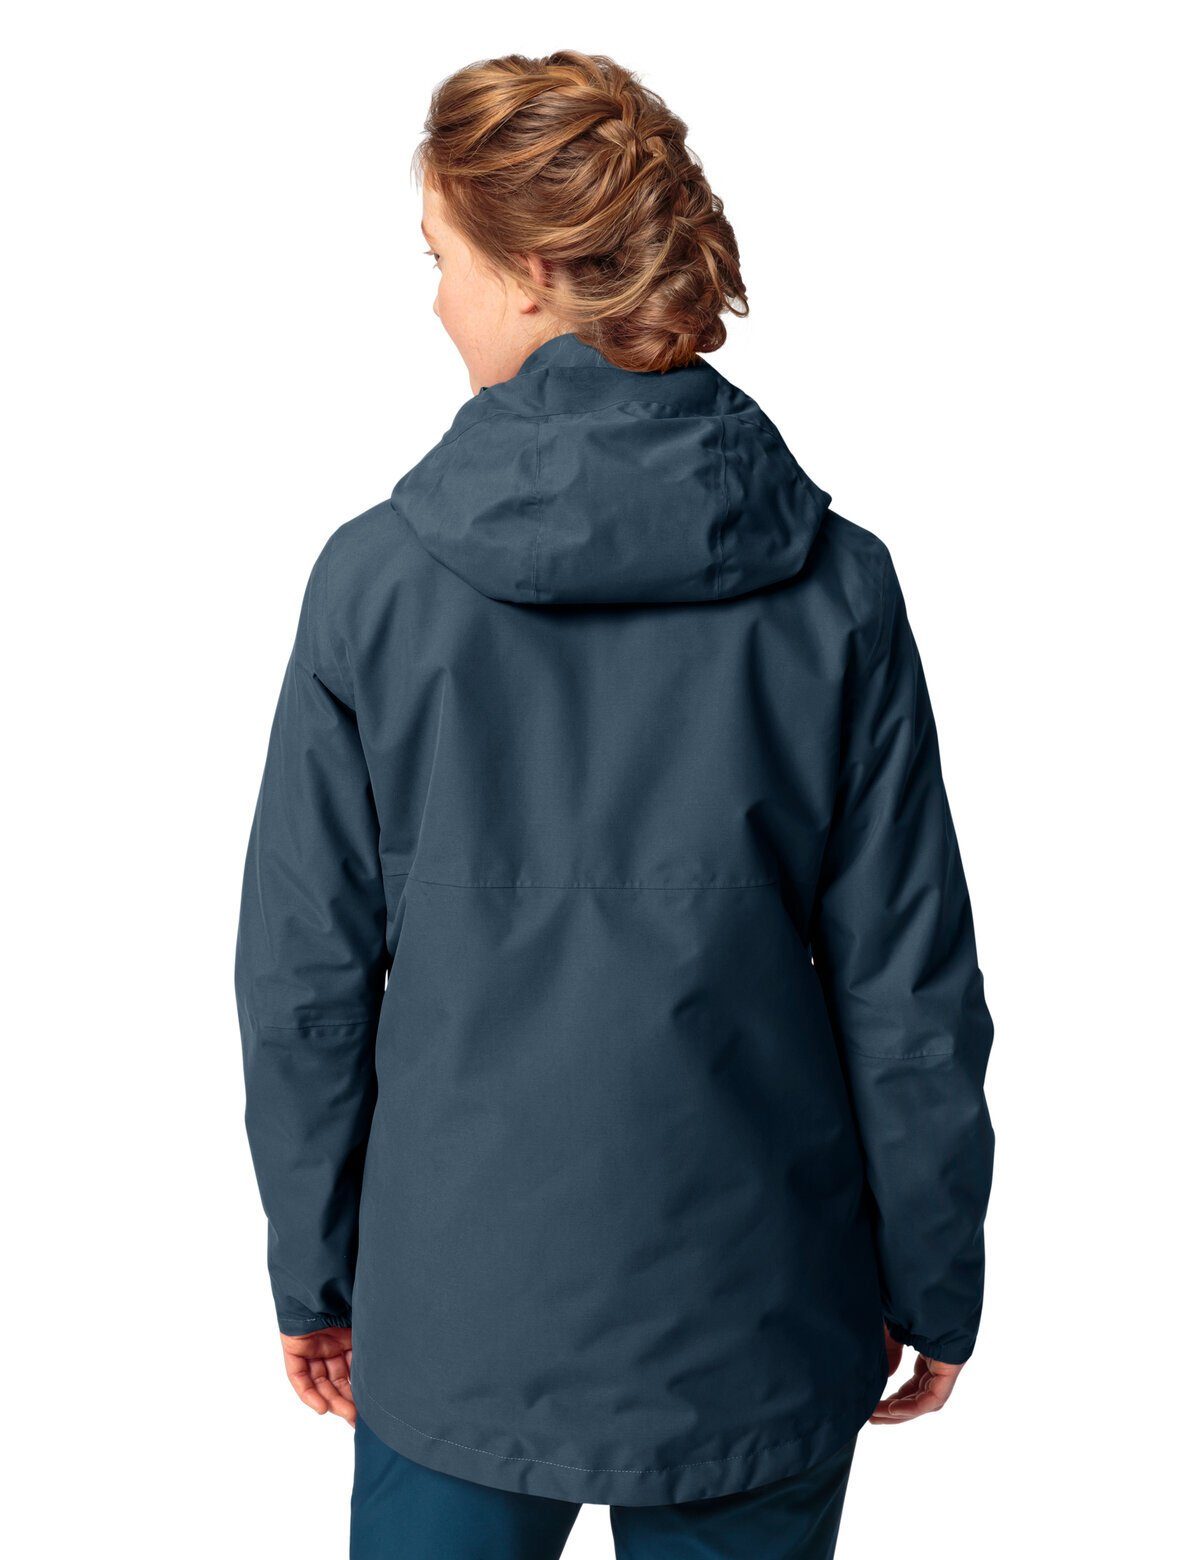 Women's VAUDE Jacket dark 3in1 Mineo sea 3-in-1-Funktionsjacke